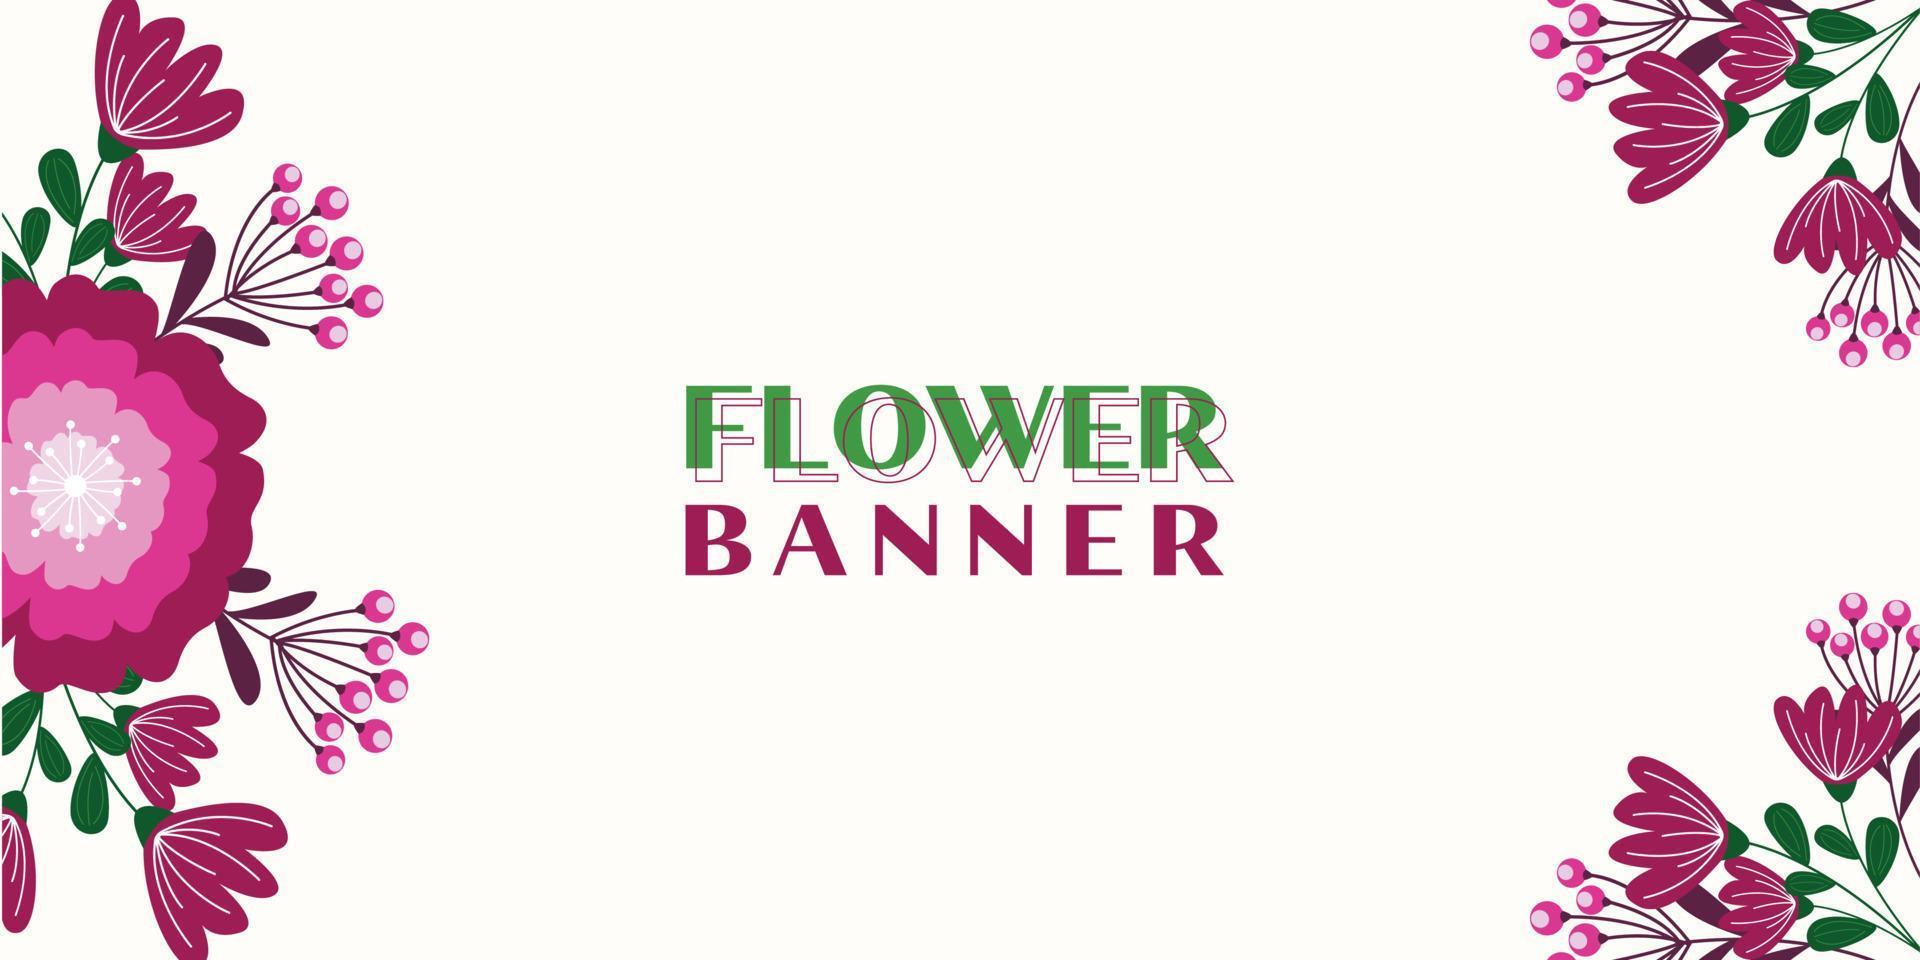 Blumenhintergrunddesign. schönes Blumenbanner-Template-Design vektor